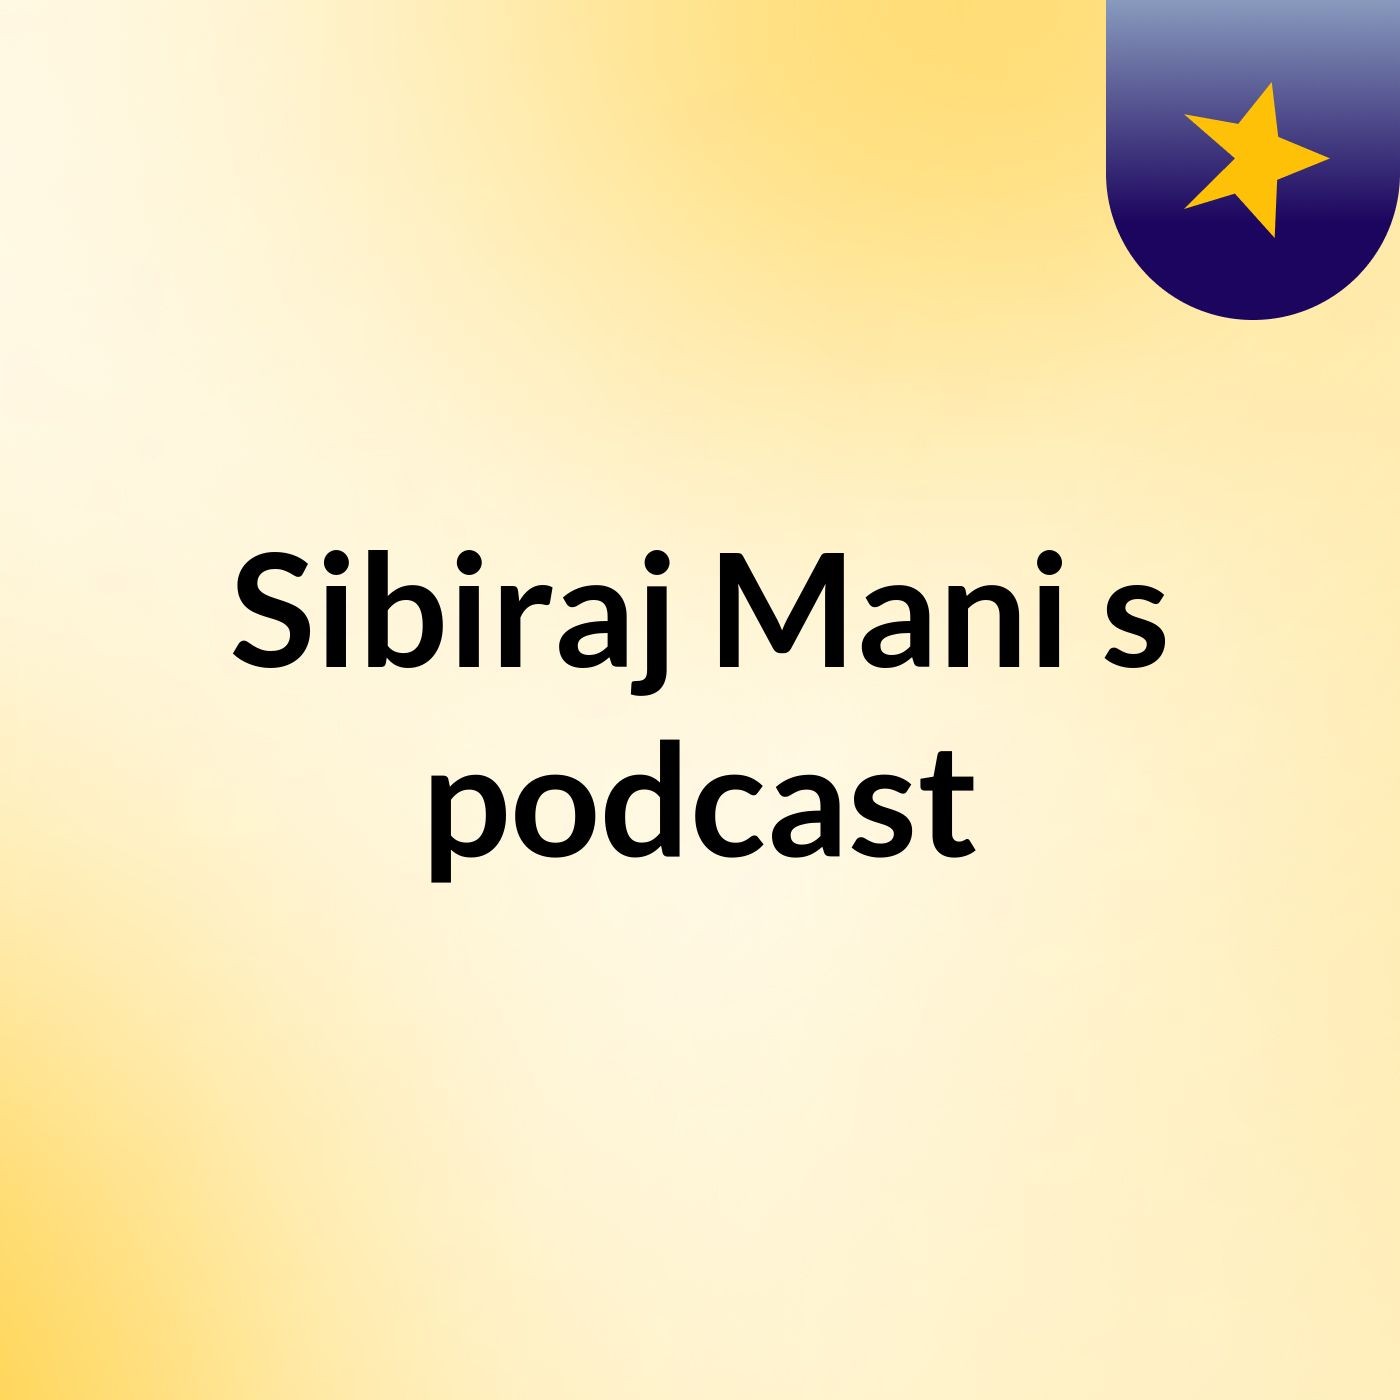 Episode 3 - Sibiraj Mani's podcast